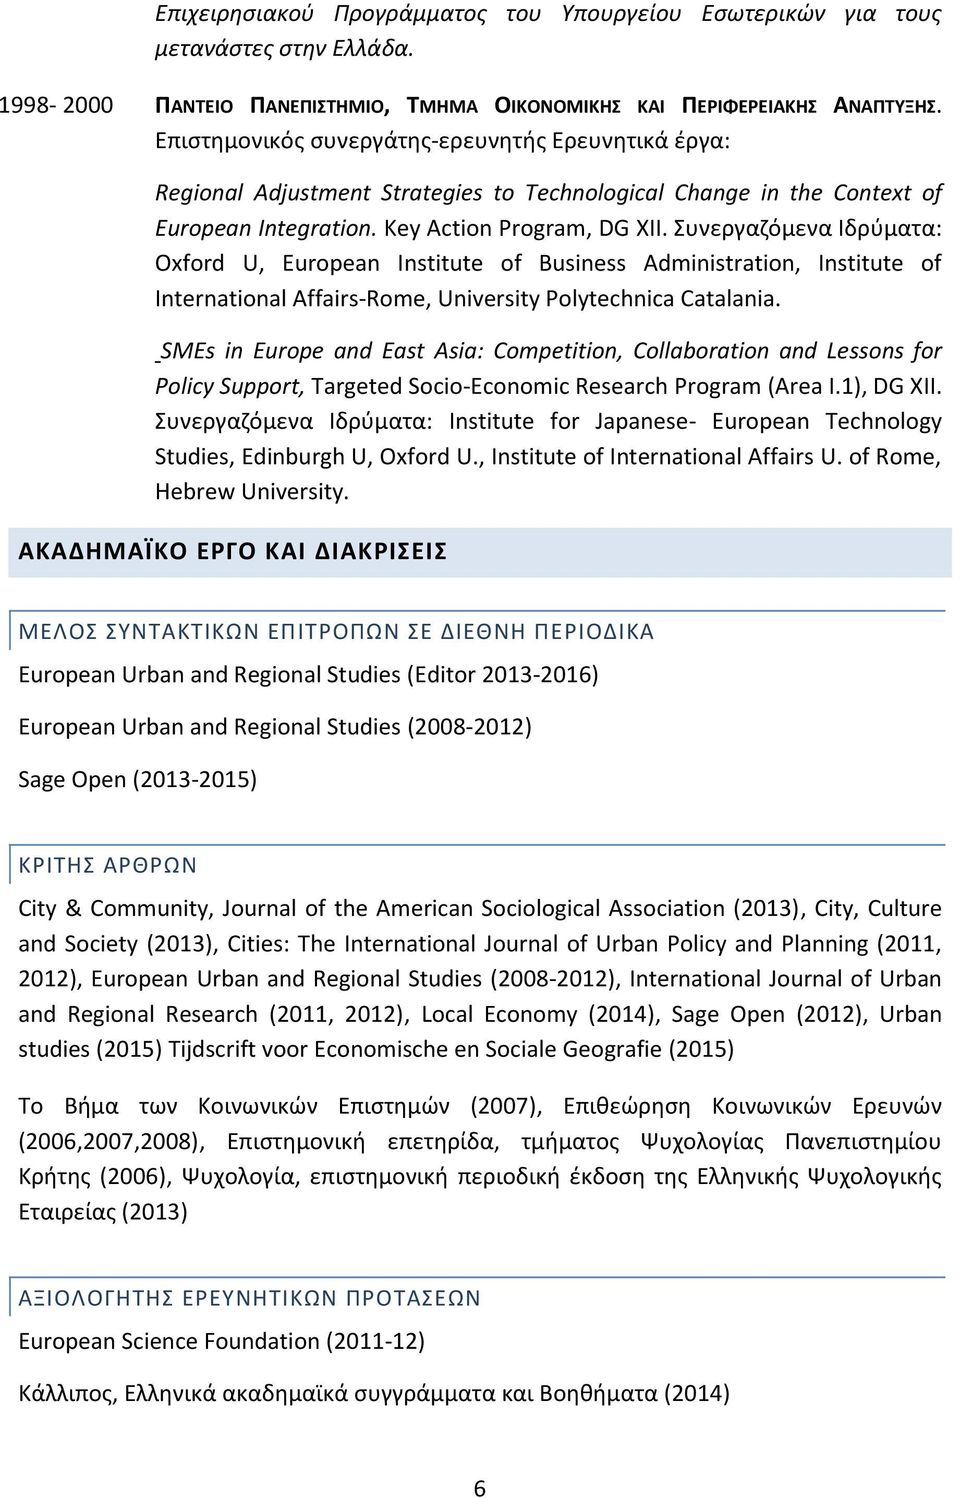 Συνεργαζόμενα Ιδρύματα: Oxford U, European Institute of Business Administration, Institute of International Affairs-Rome, University Polytechnica Catalania.